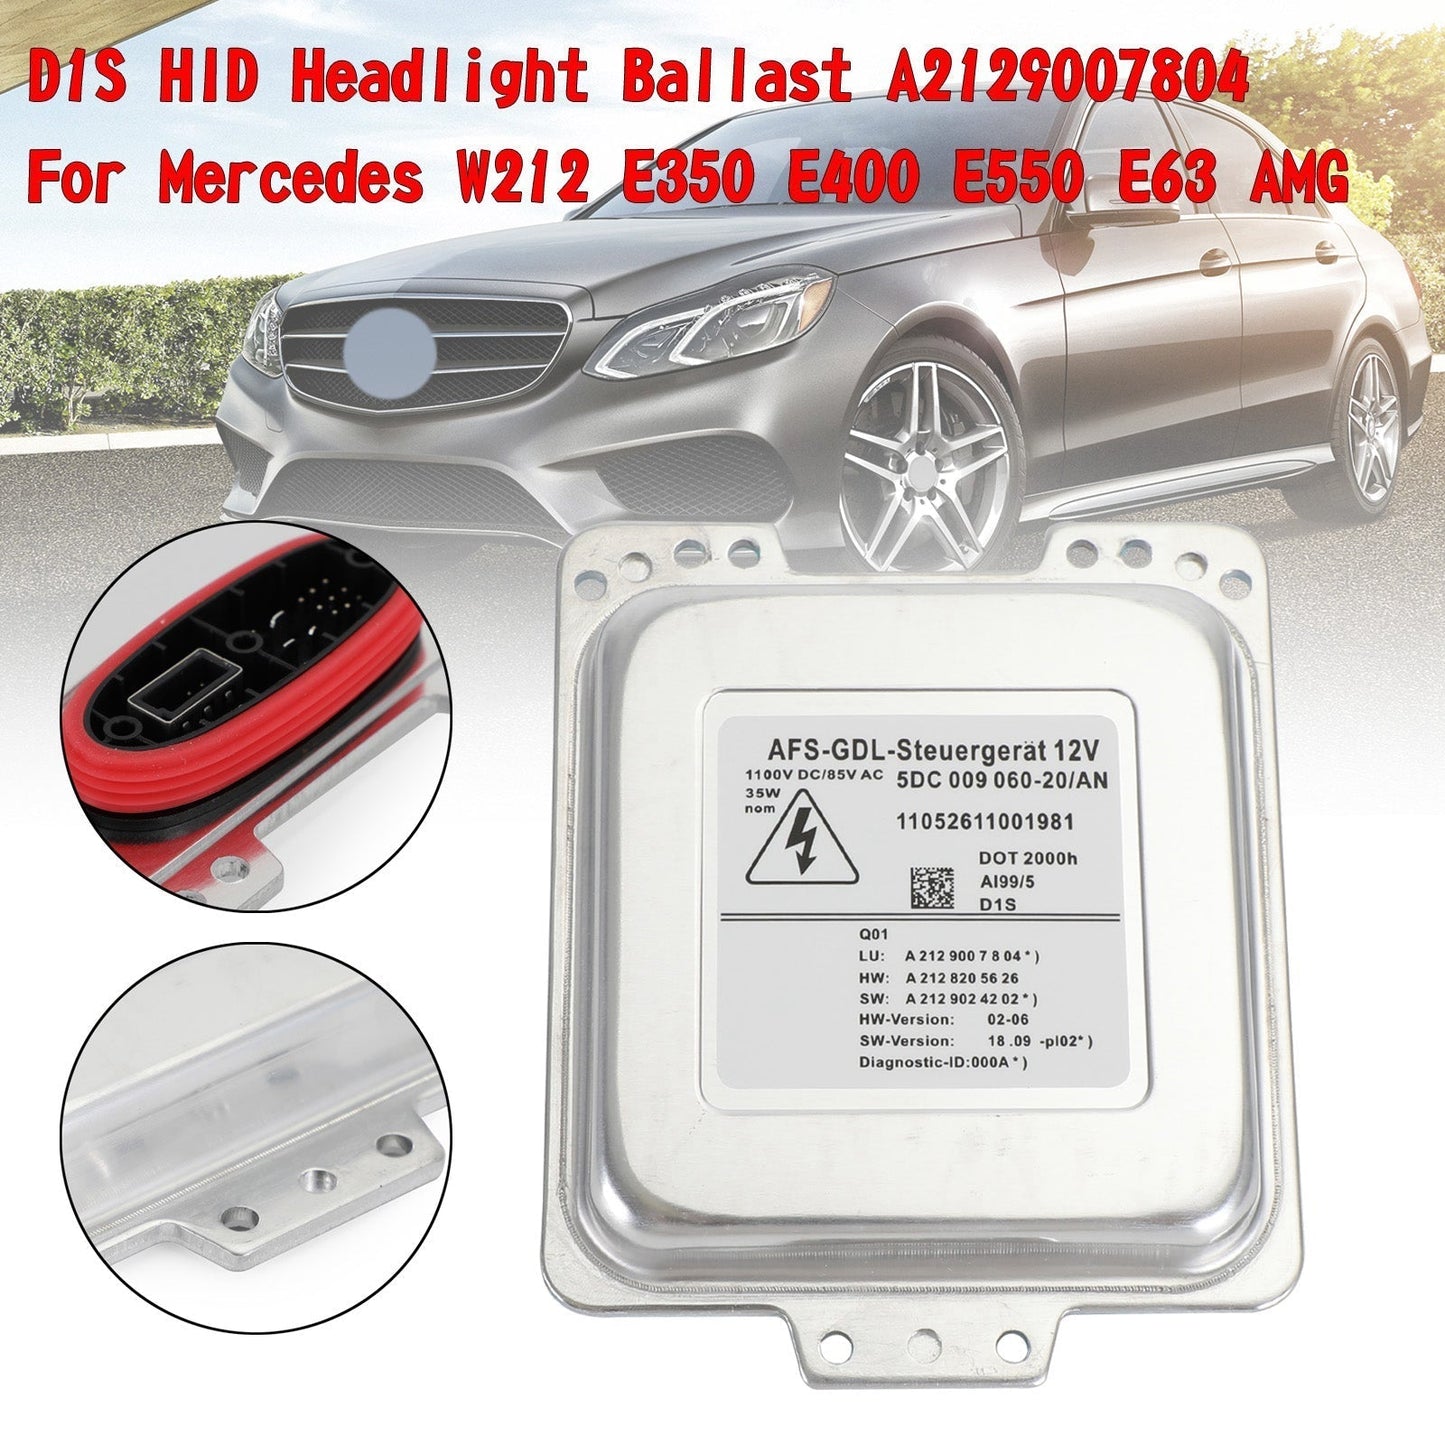 2009-2013 Mercedes Benz E Class C207 Coupe D1S HID Headlight Ballast A2129007804 A2128205626